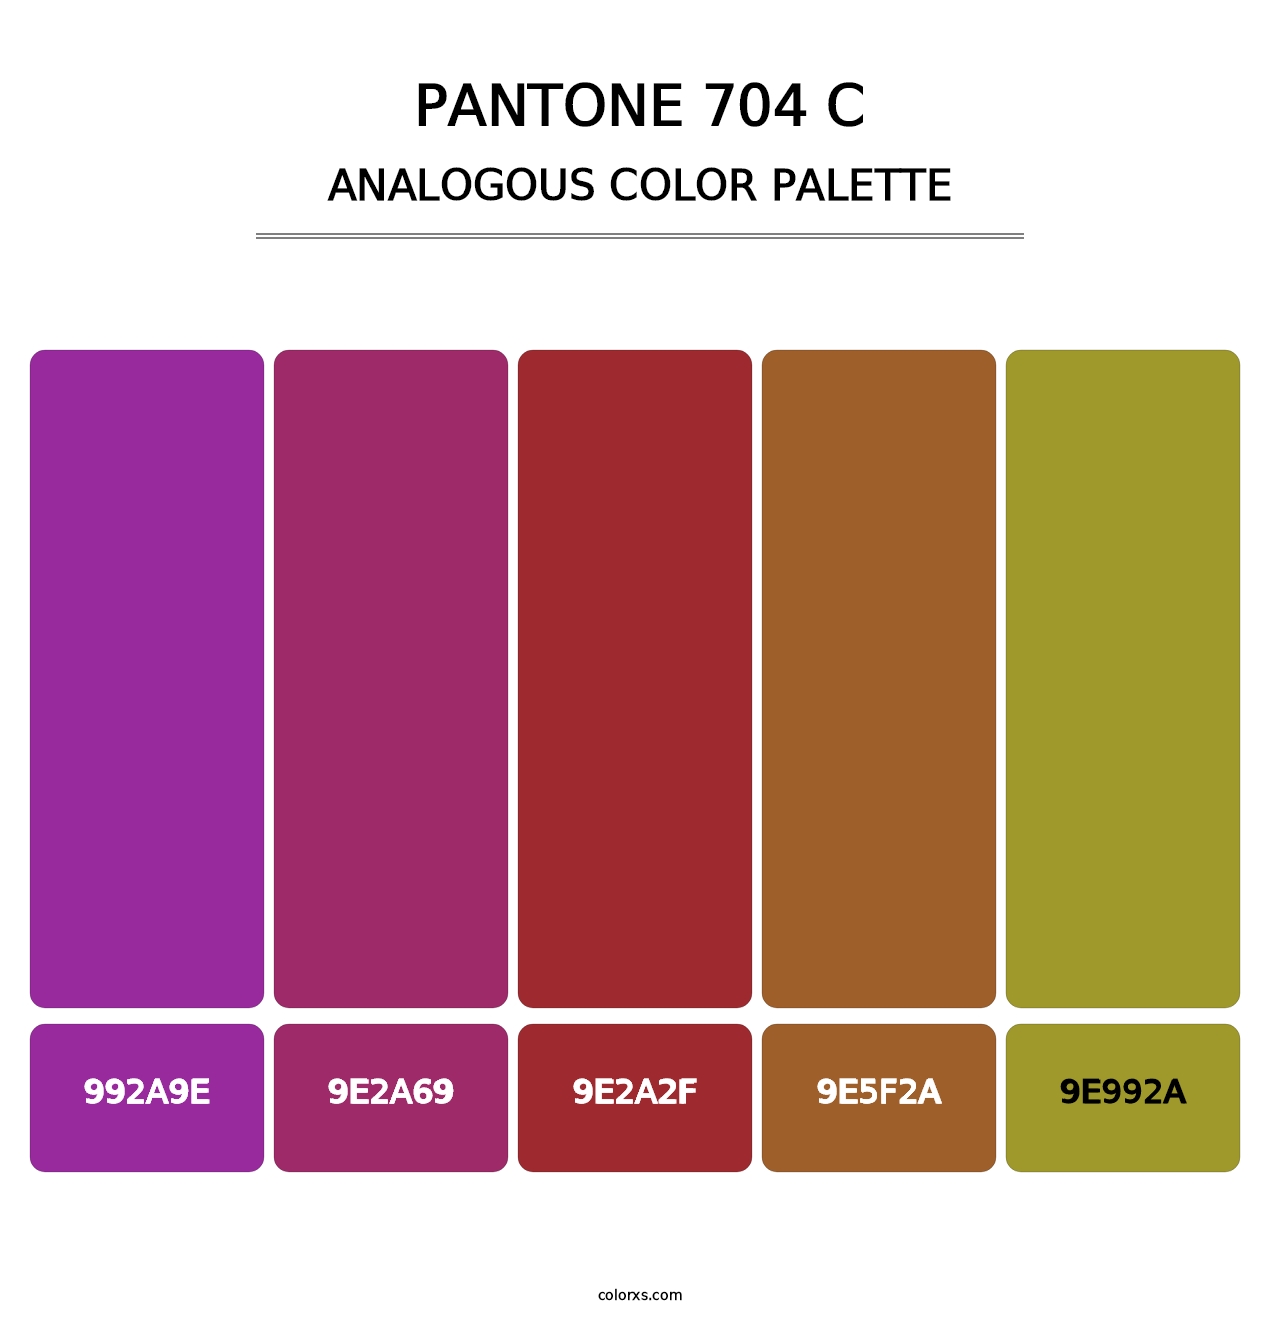 PANTONE 704 C - Analogous Color Palette